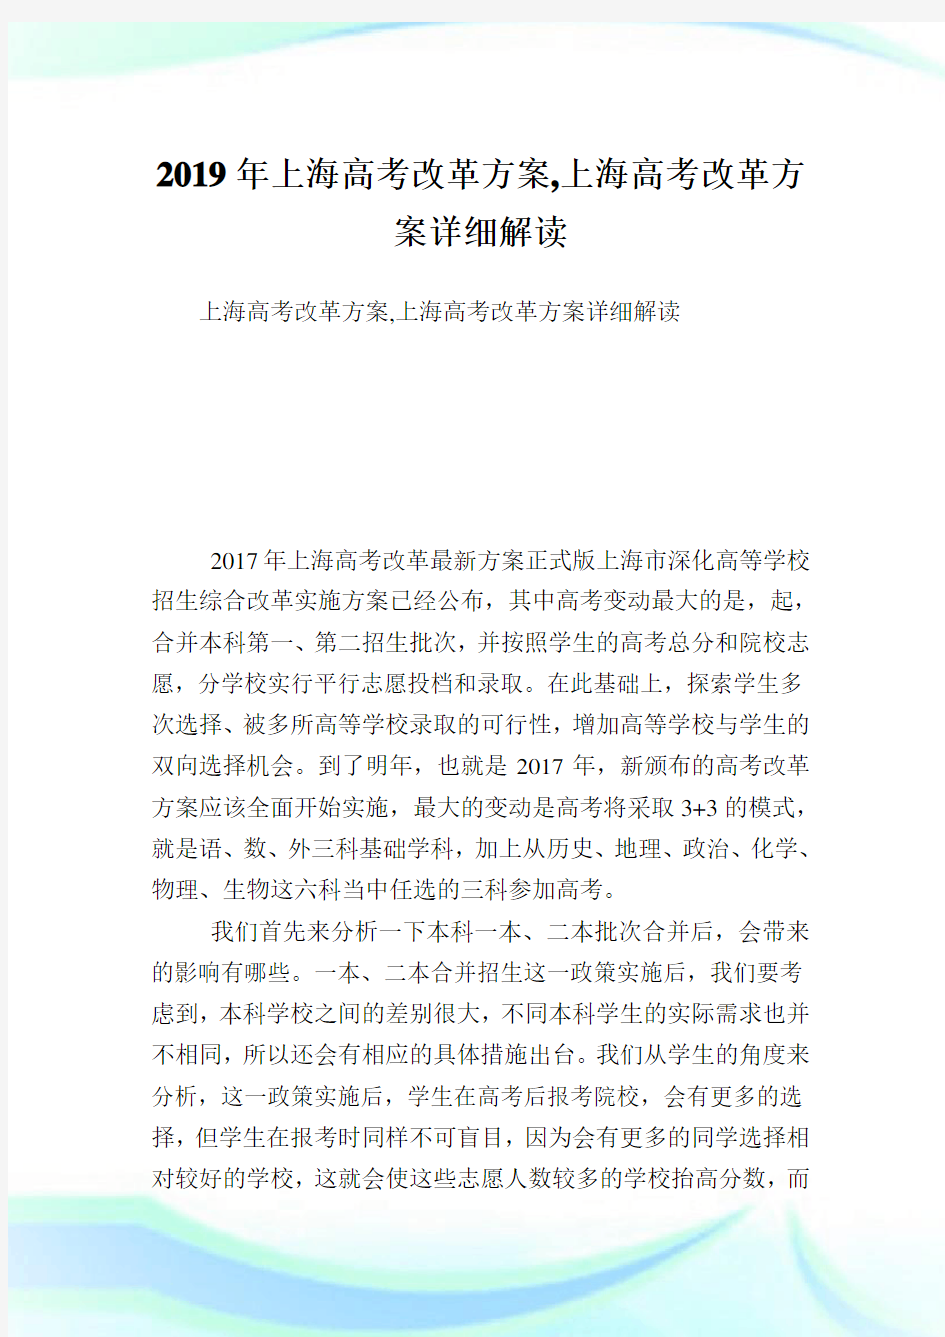 上海高考改革方案,上海高考改革方案详细解读.doc